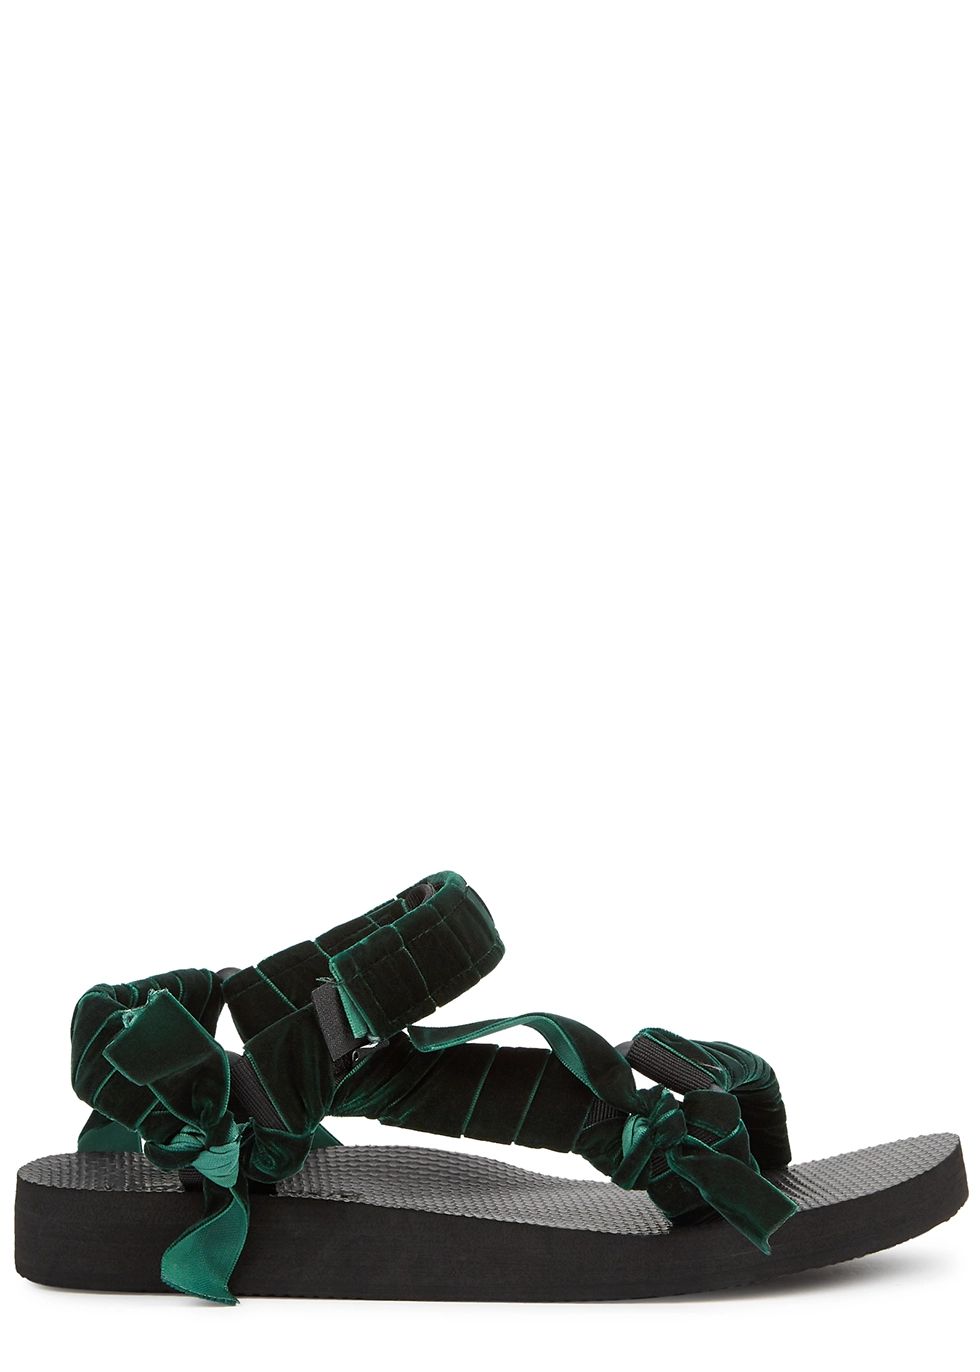 Trekky green velvet-trimmed sandals | Harvey Nichols US